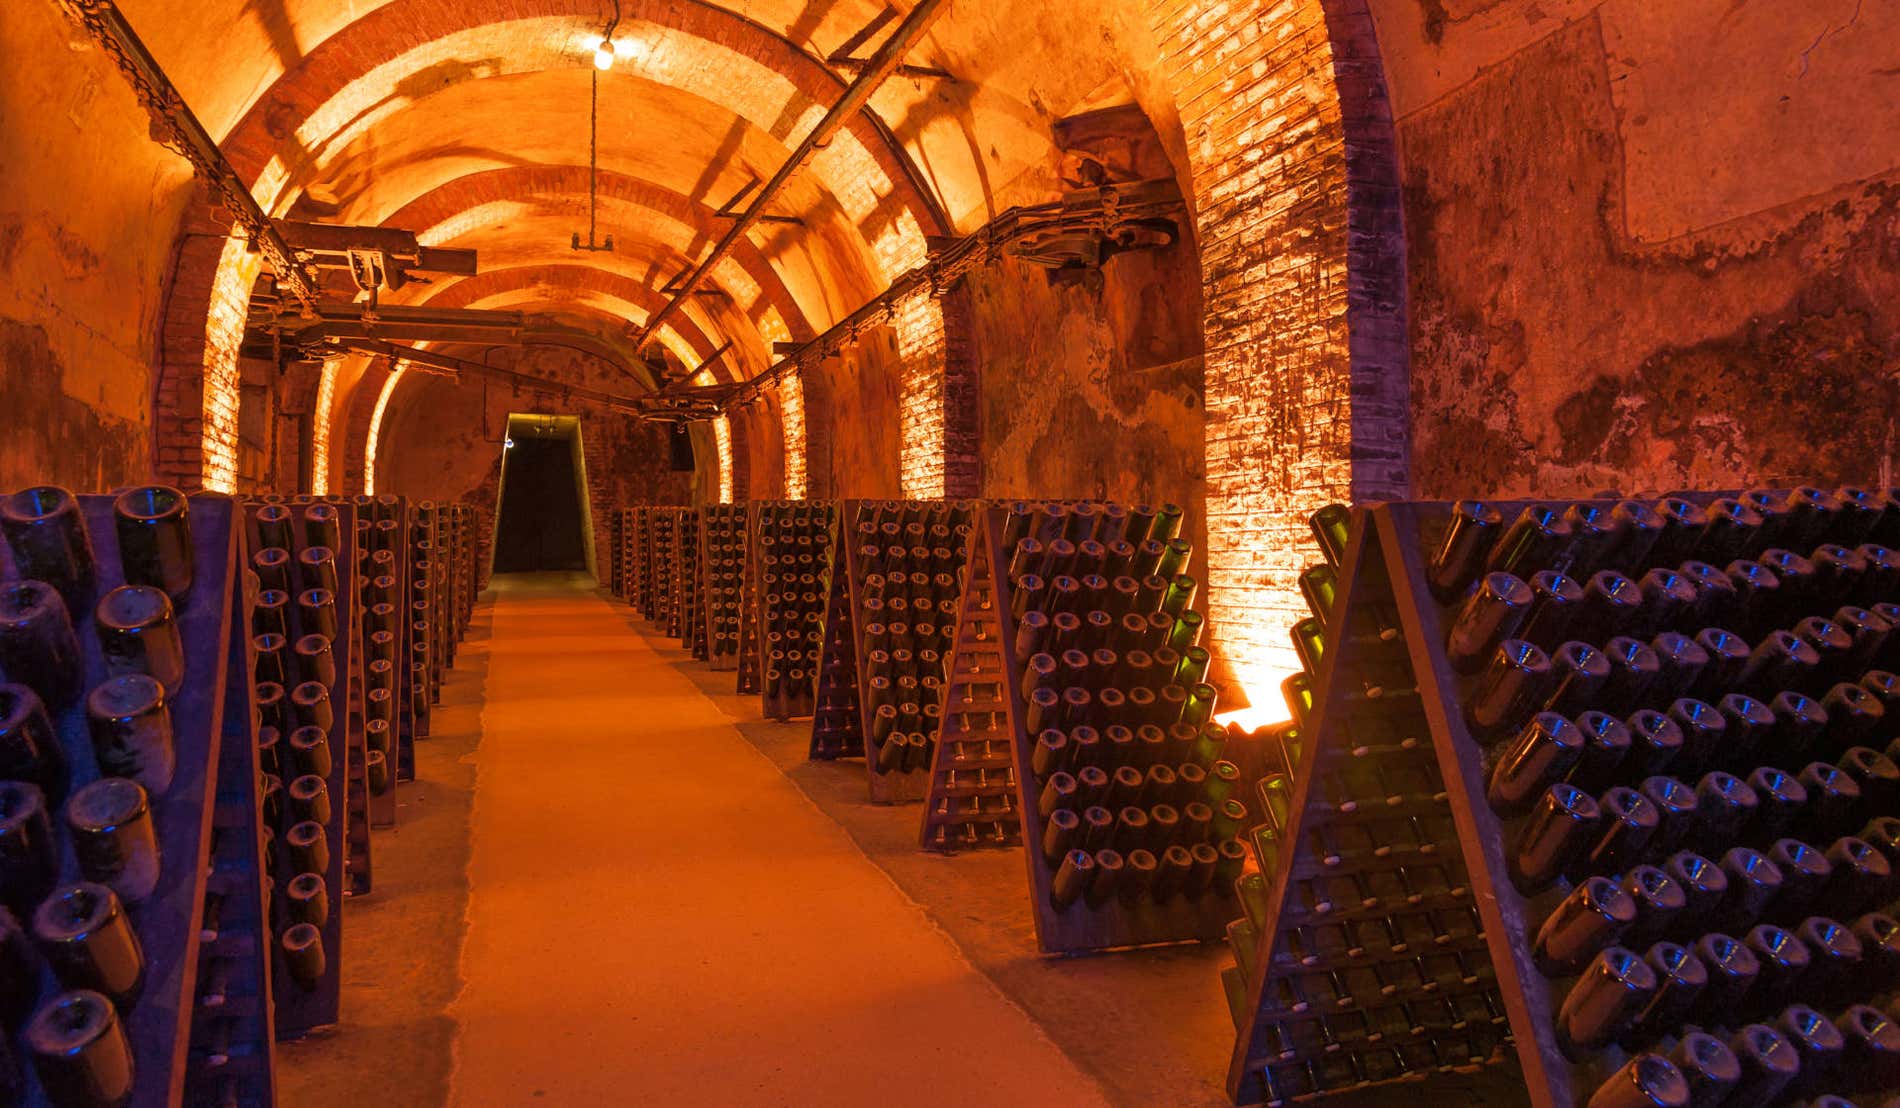 Visit of Epernay & Multiple Champagne Tastings in a Vineyard